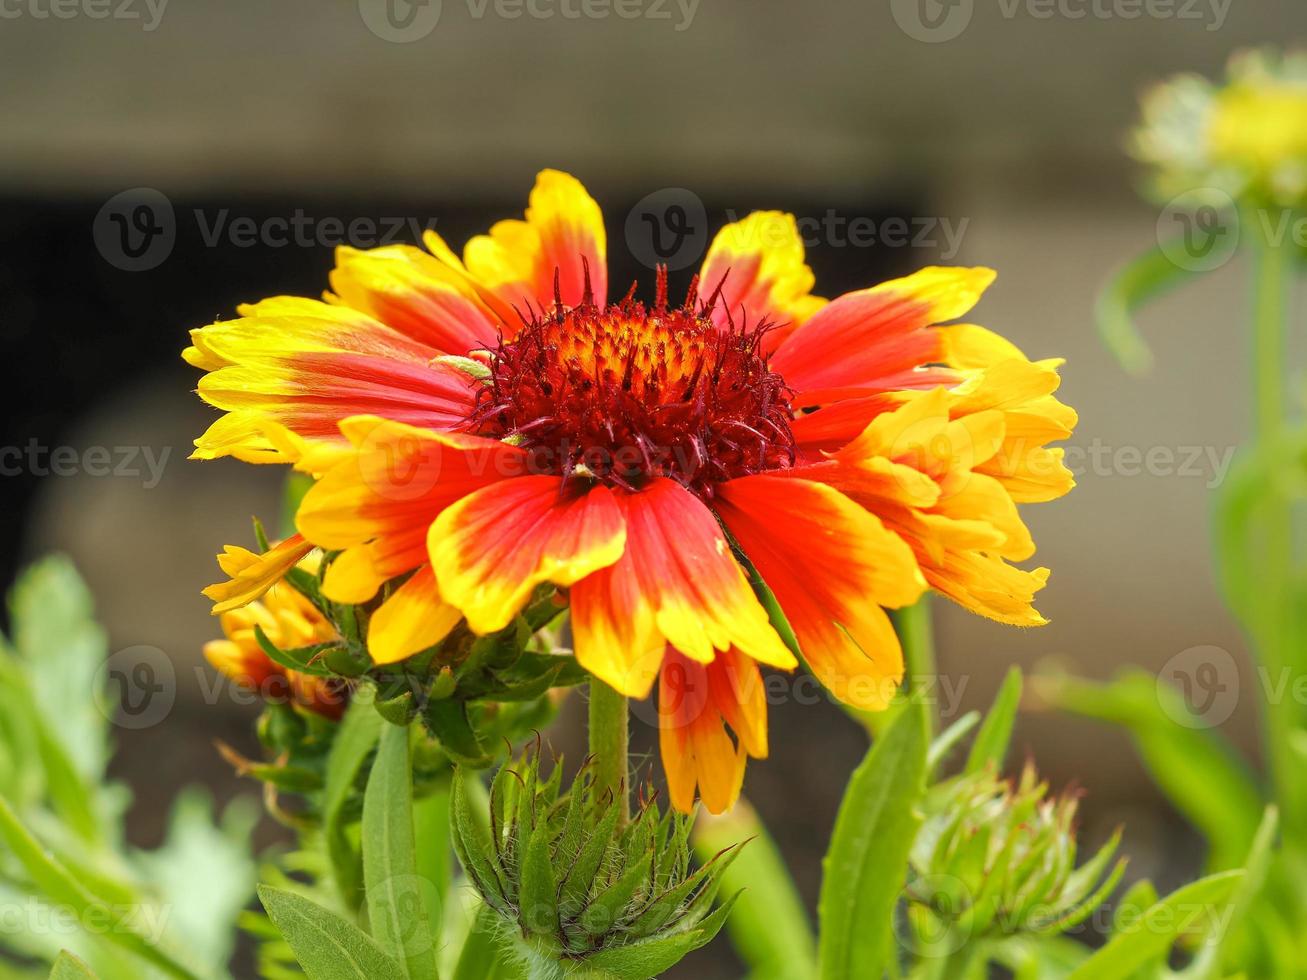 flor de gaillardia de color naranja brillante y amarillo foto